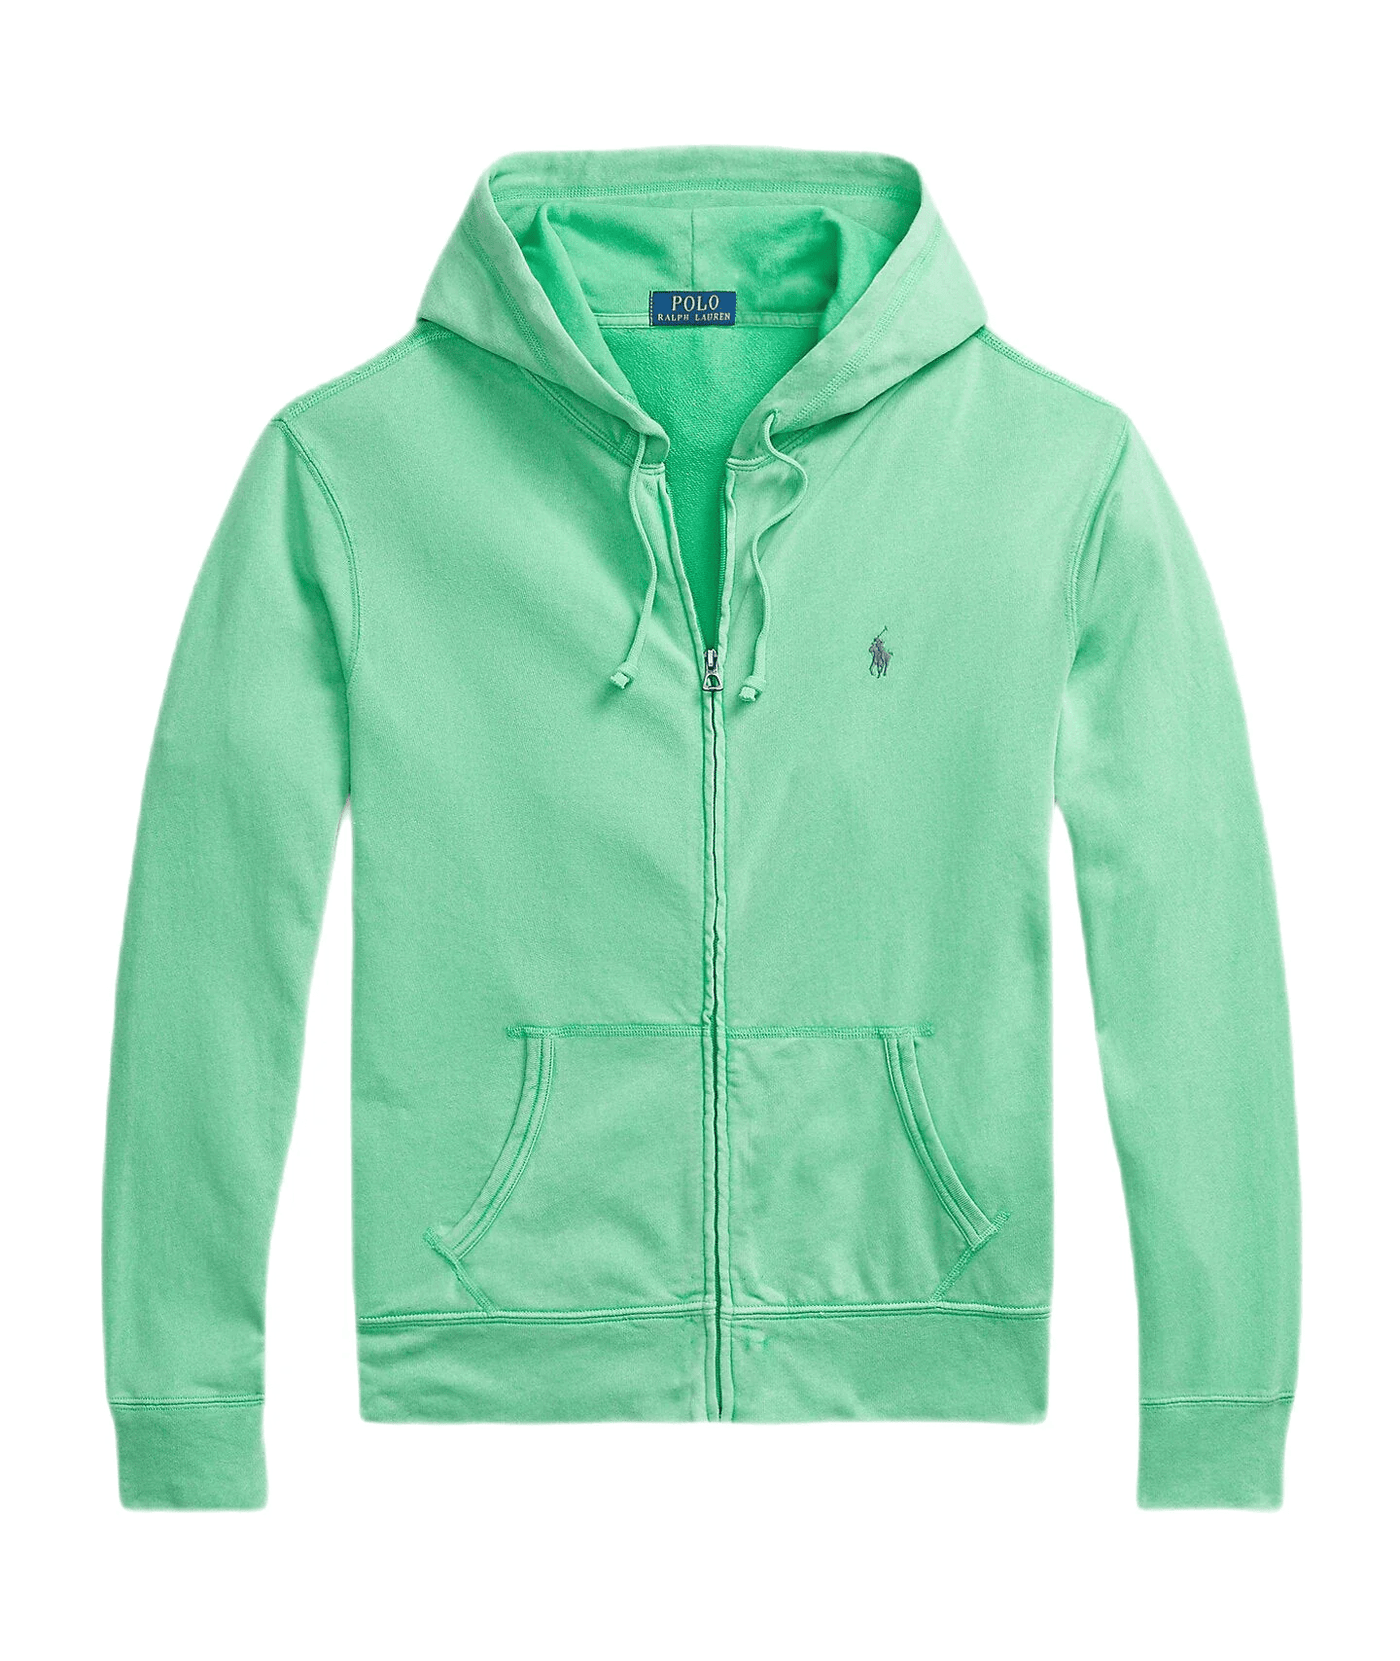 Polo Ralph Lauren - Sweat à capuche vert zippé coton éponge spa - Lothaire